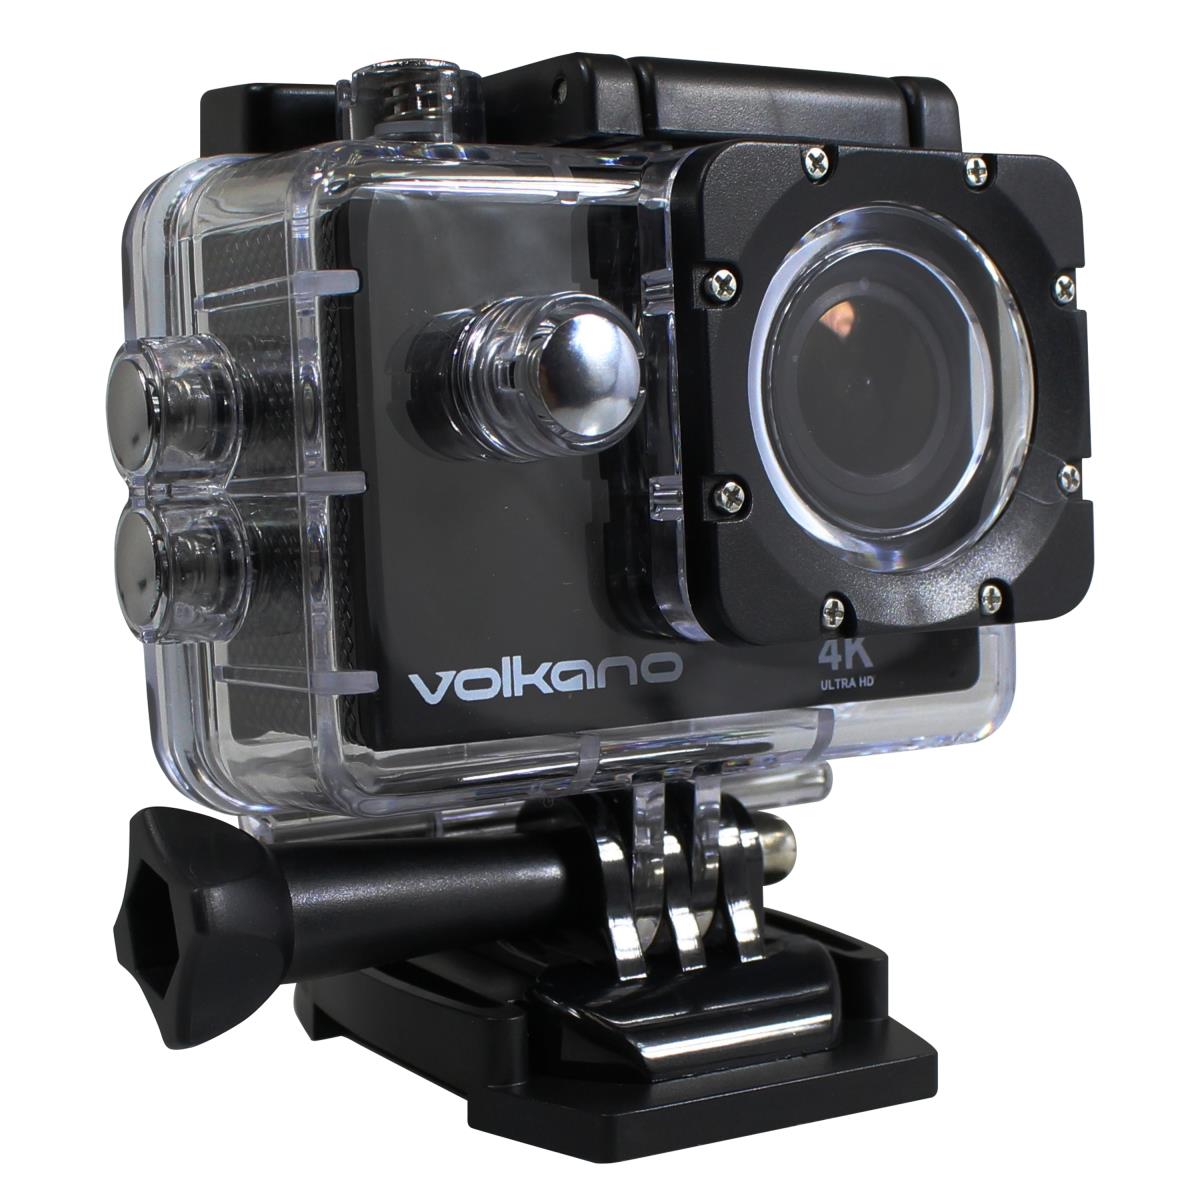 Volkano Extreme Series 4K UHD Action Camera